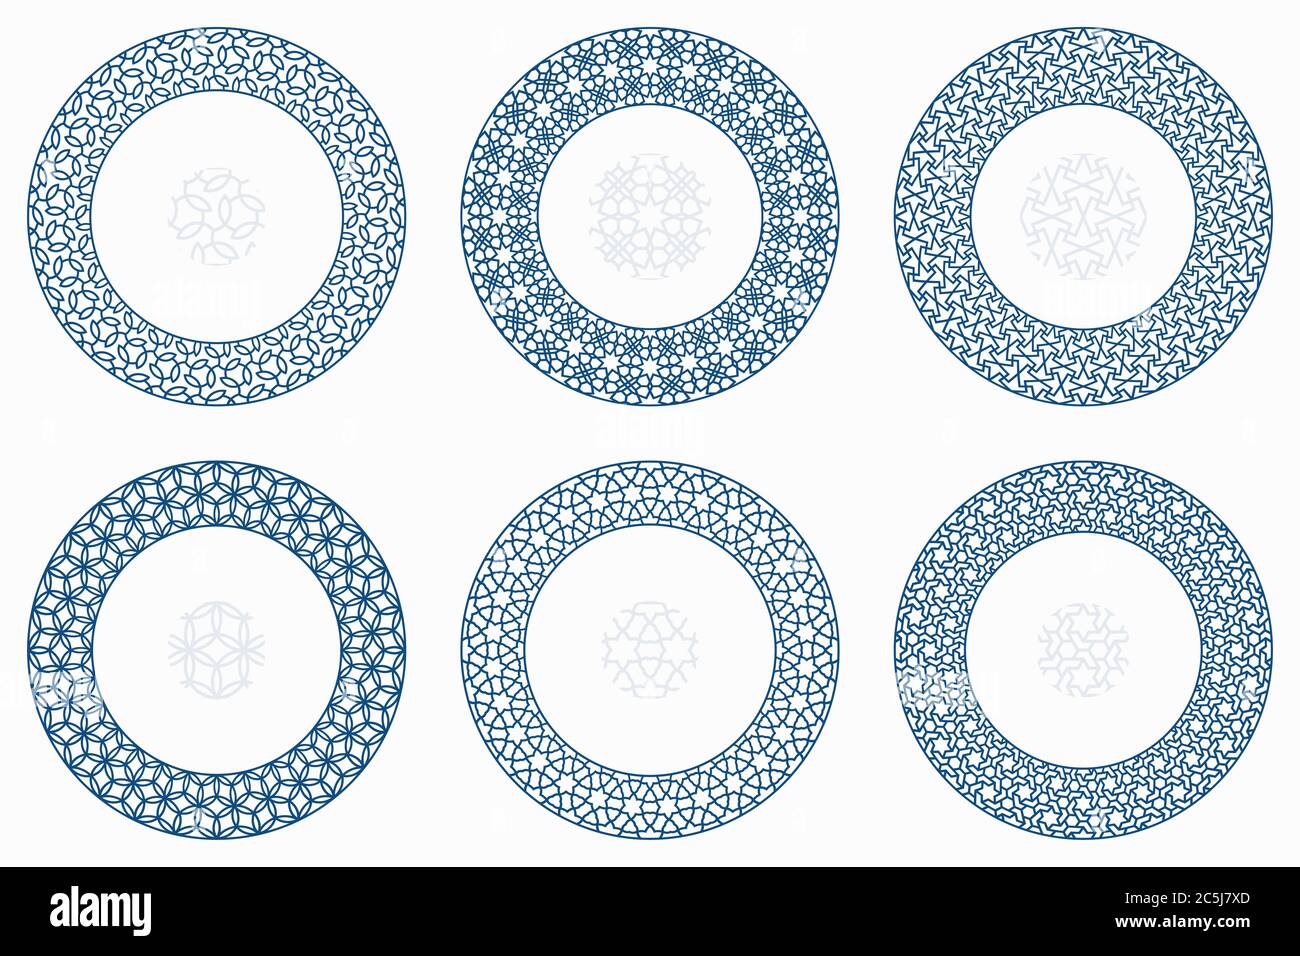 Arabische geometrische runde Muster gesetzt. Rahmen, Rahmen. Vektor-Illustration von runden islamischen Ornament-Elemente mit nahtlosen Muster Pinsel Stock Vektor